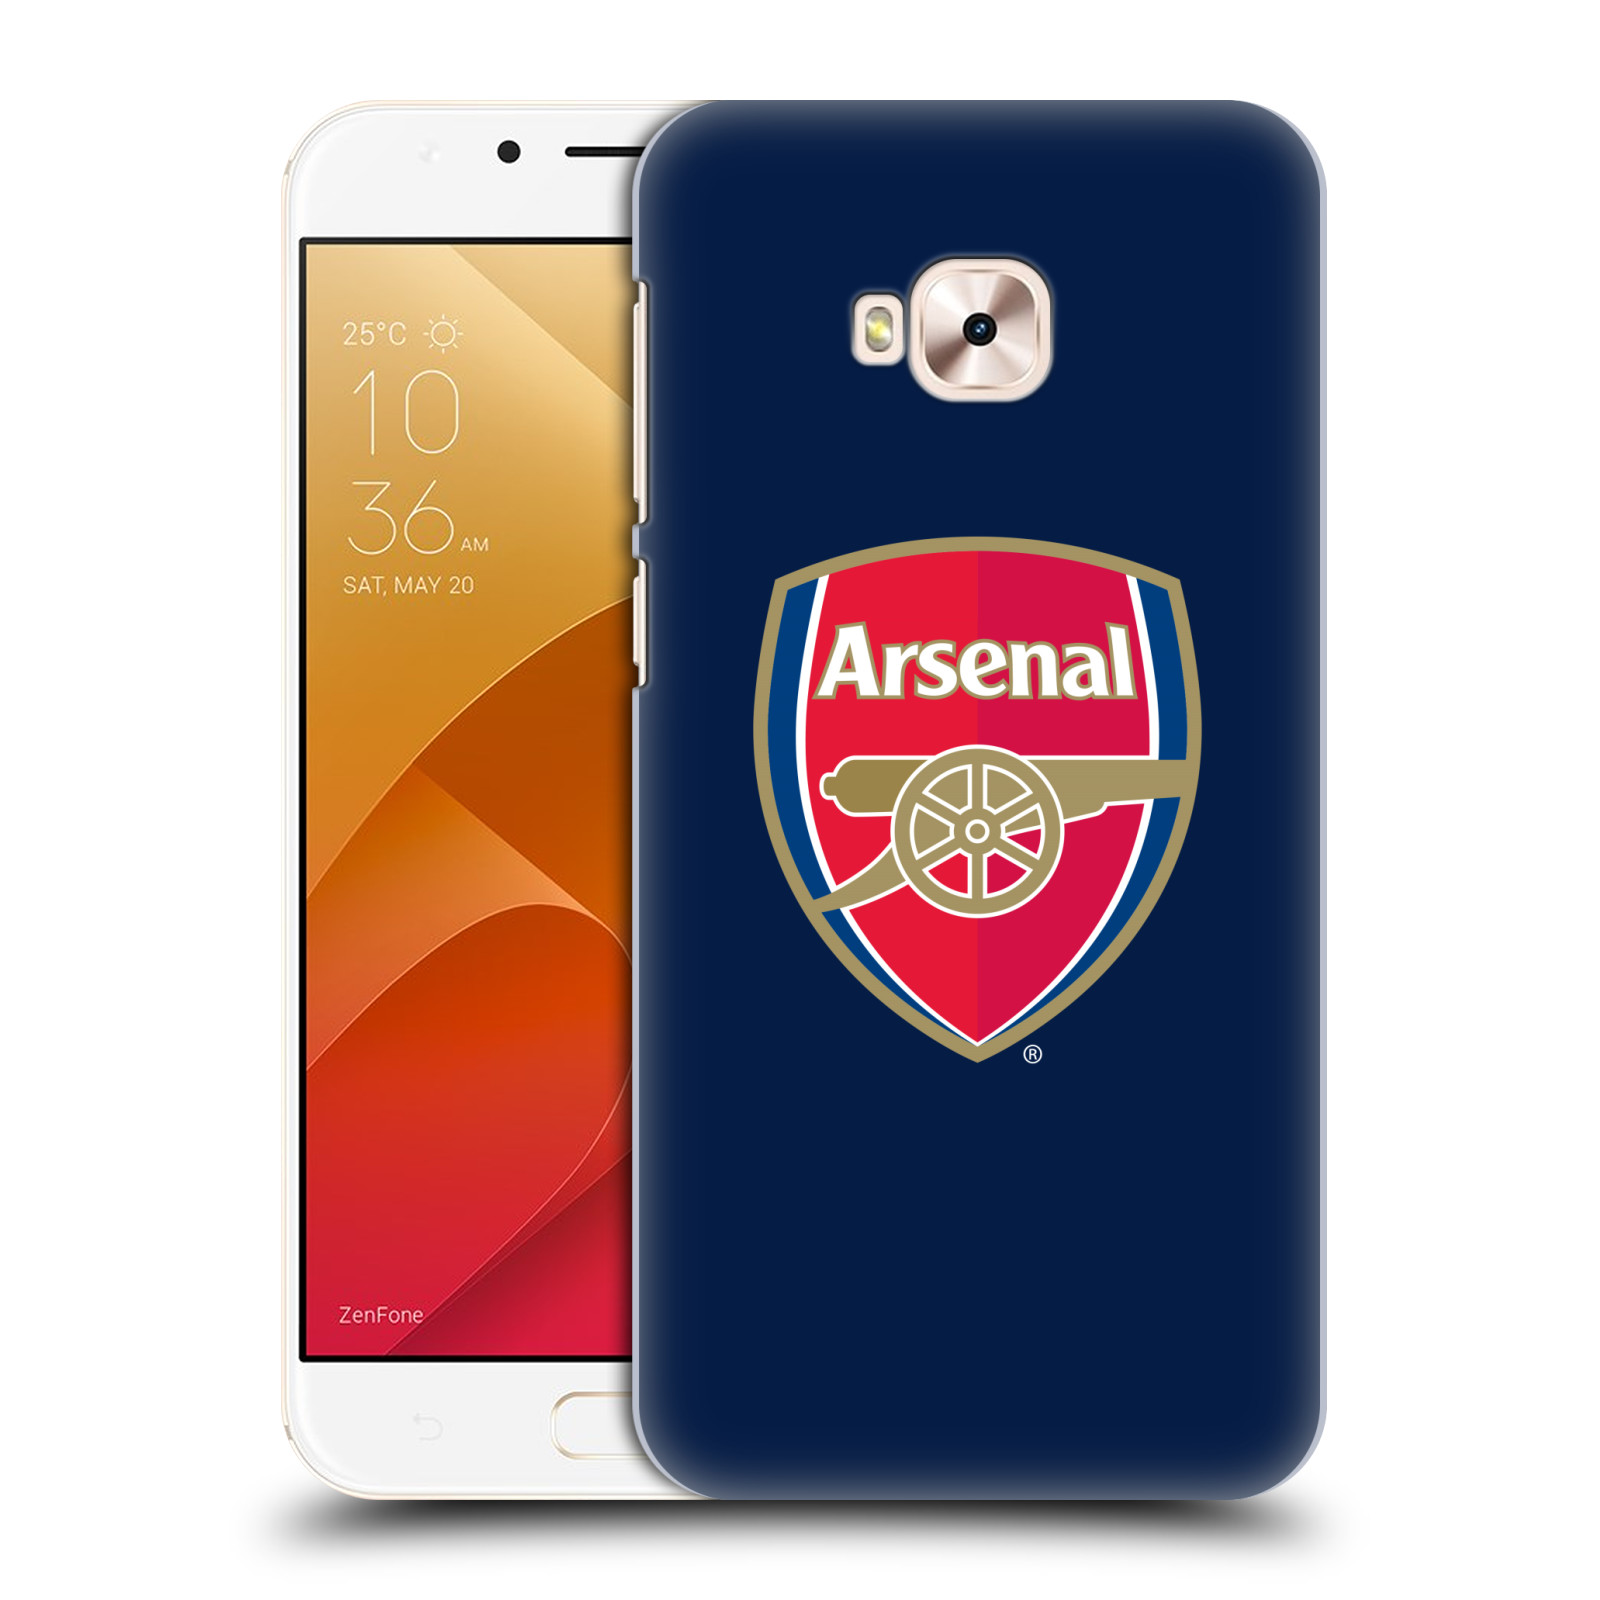 HEAD CASE plastový obal na mobil Asus Zenfone 4 Selfie Pro ZD552KL Fotbalový klub Arsenal znak barevný modré pozadí